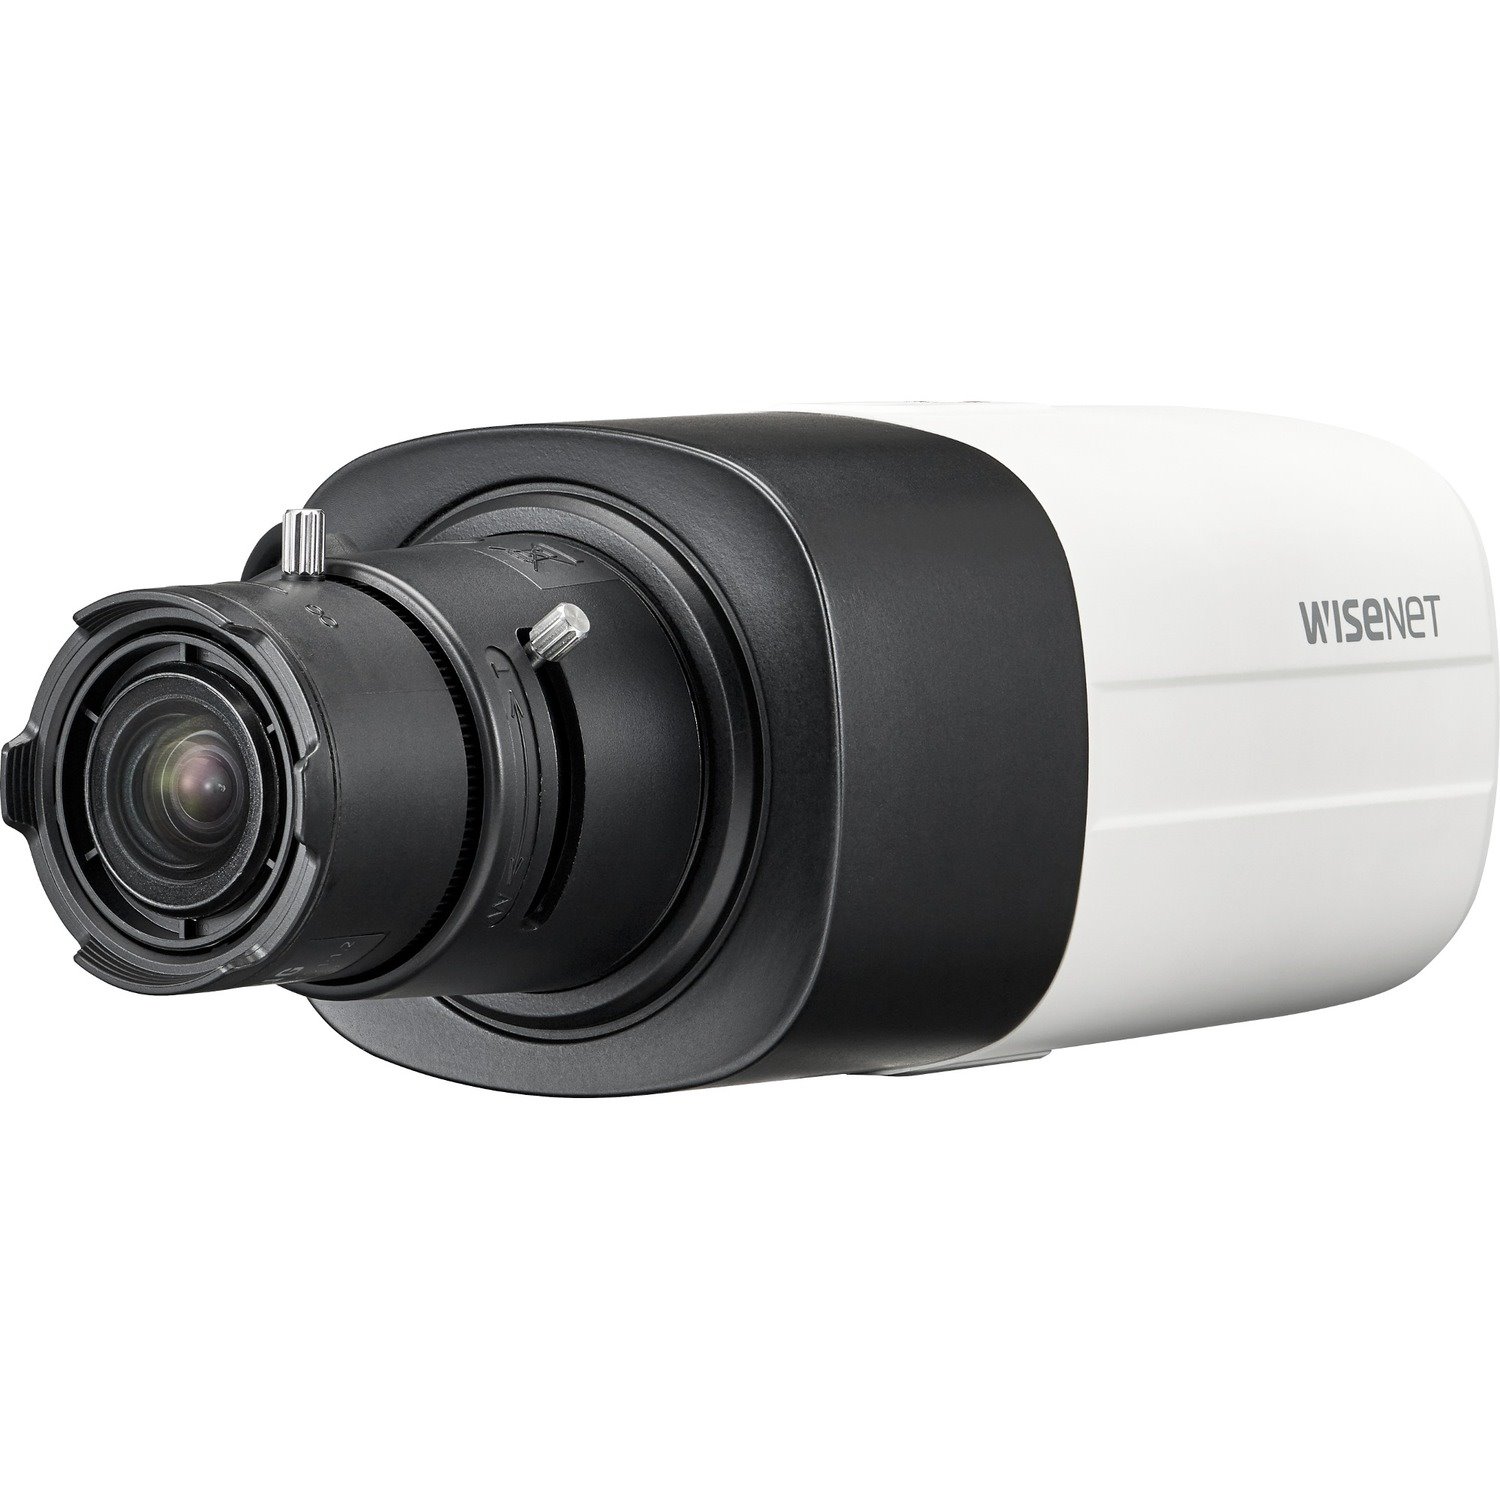 Wisenet HCB-6001 2 Megapixel HD Surveillance Camera - Monochrome, Colour